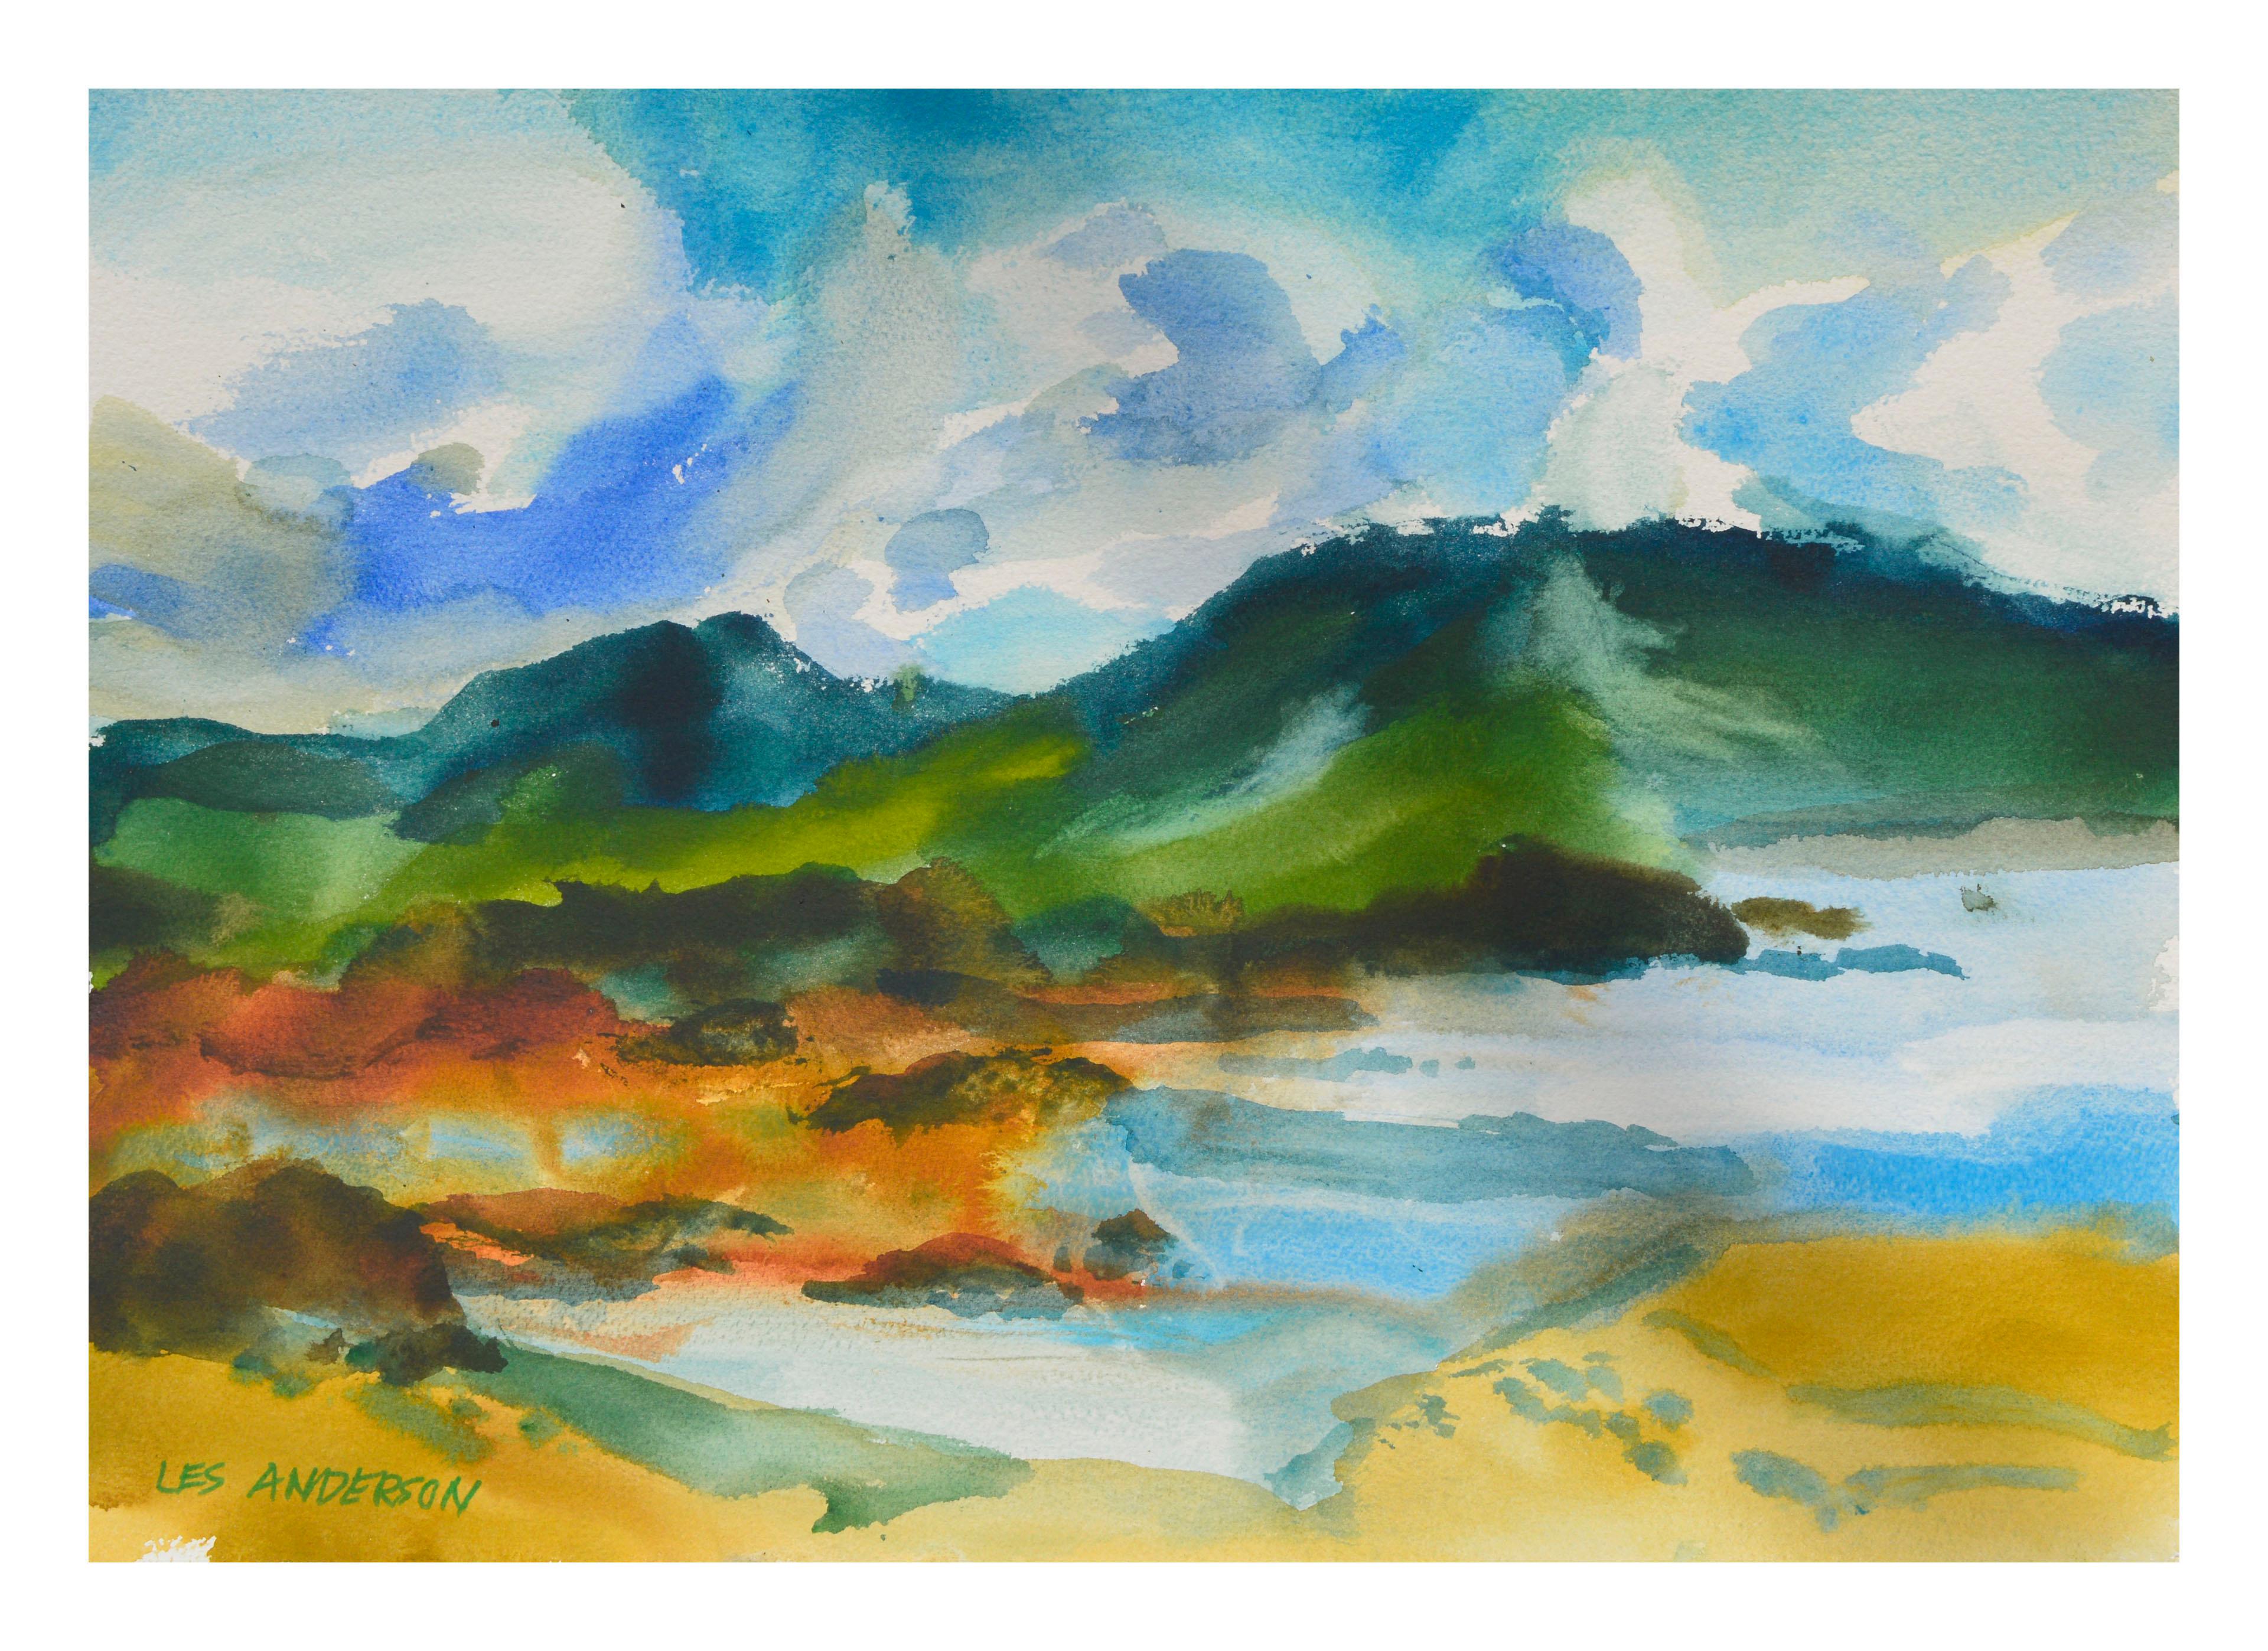 Les Anderson Landscape Art - Lake & Mountains Watercolor Landscape 